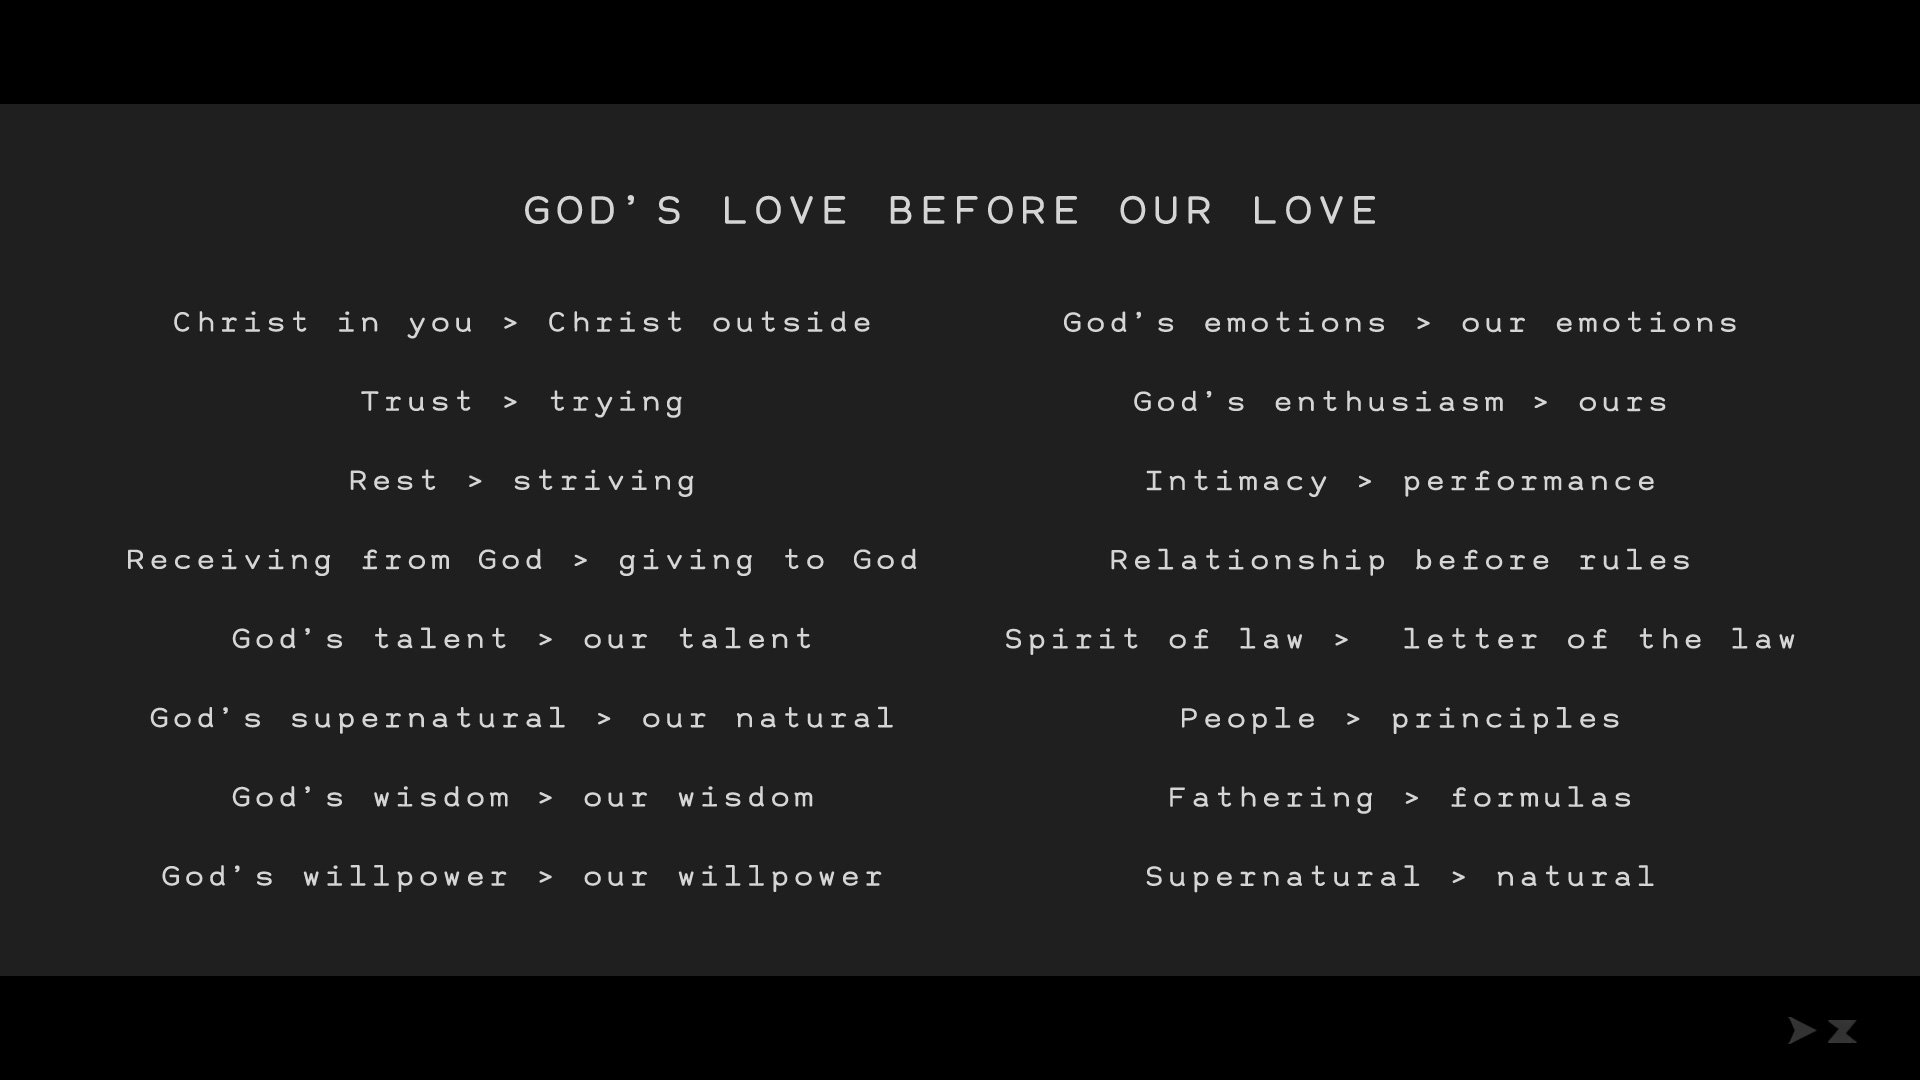 02_gods-love-before-our-lov.jpg